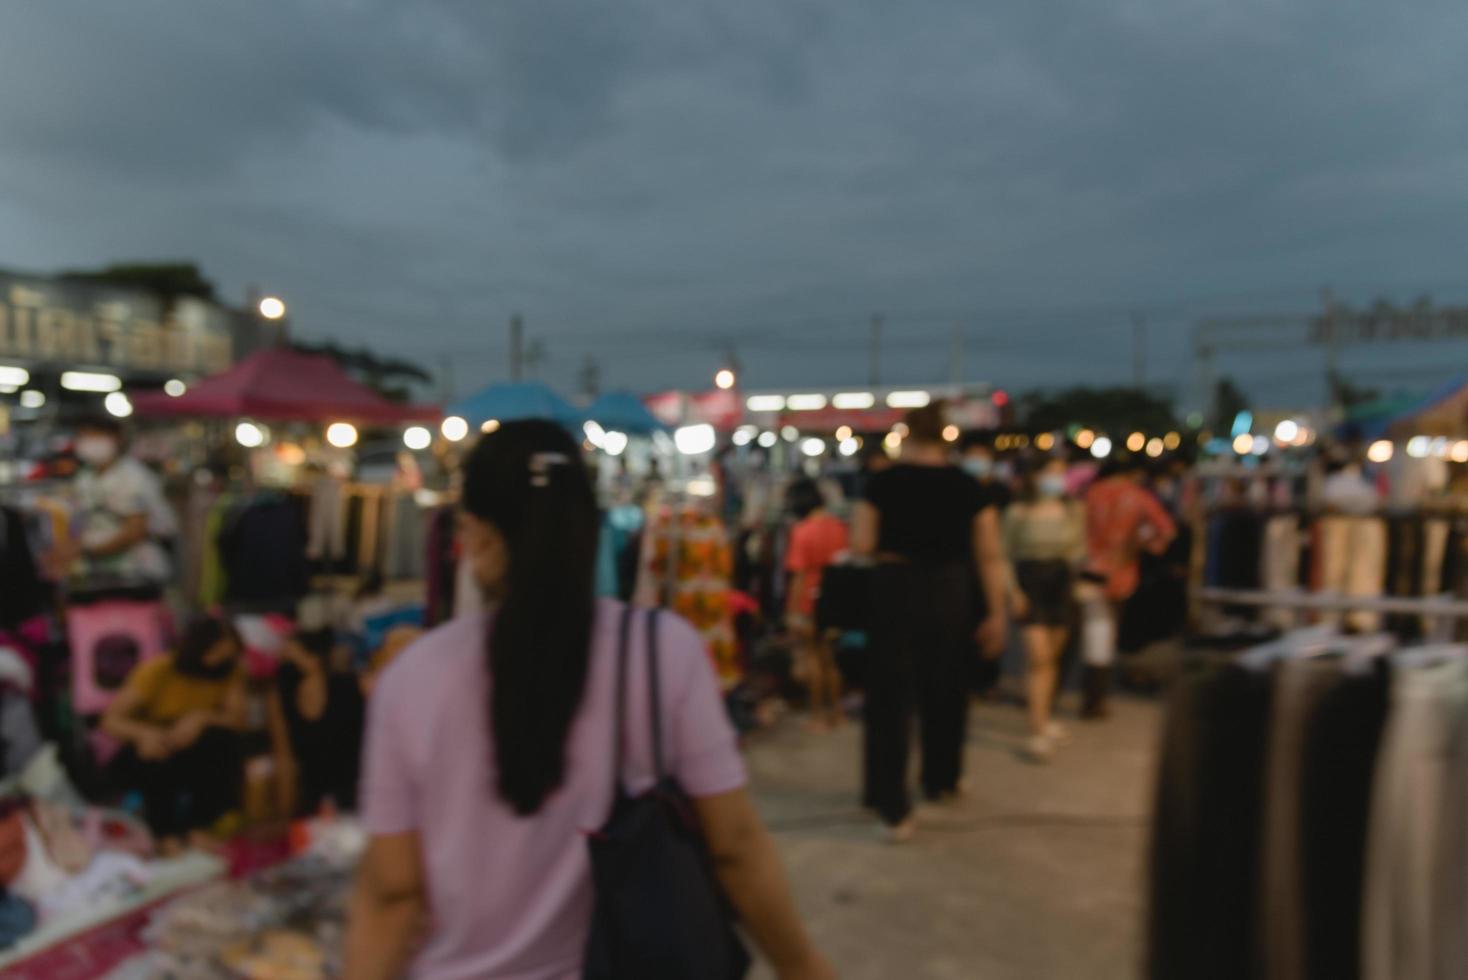 wazig beeld van nacht markt festival mensen wandelen Aan weg met licht bokeh voor achtergrond. foto